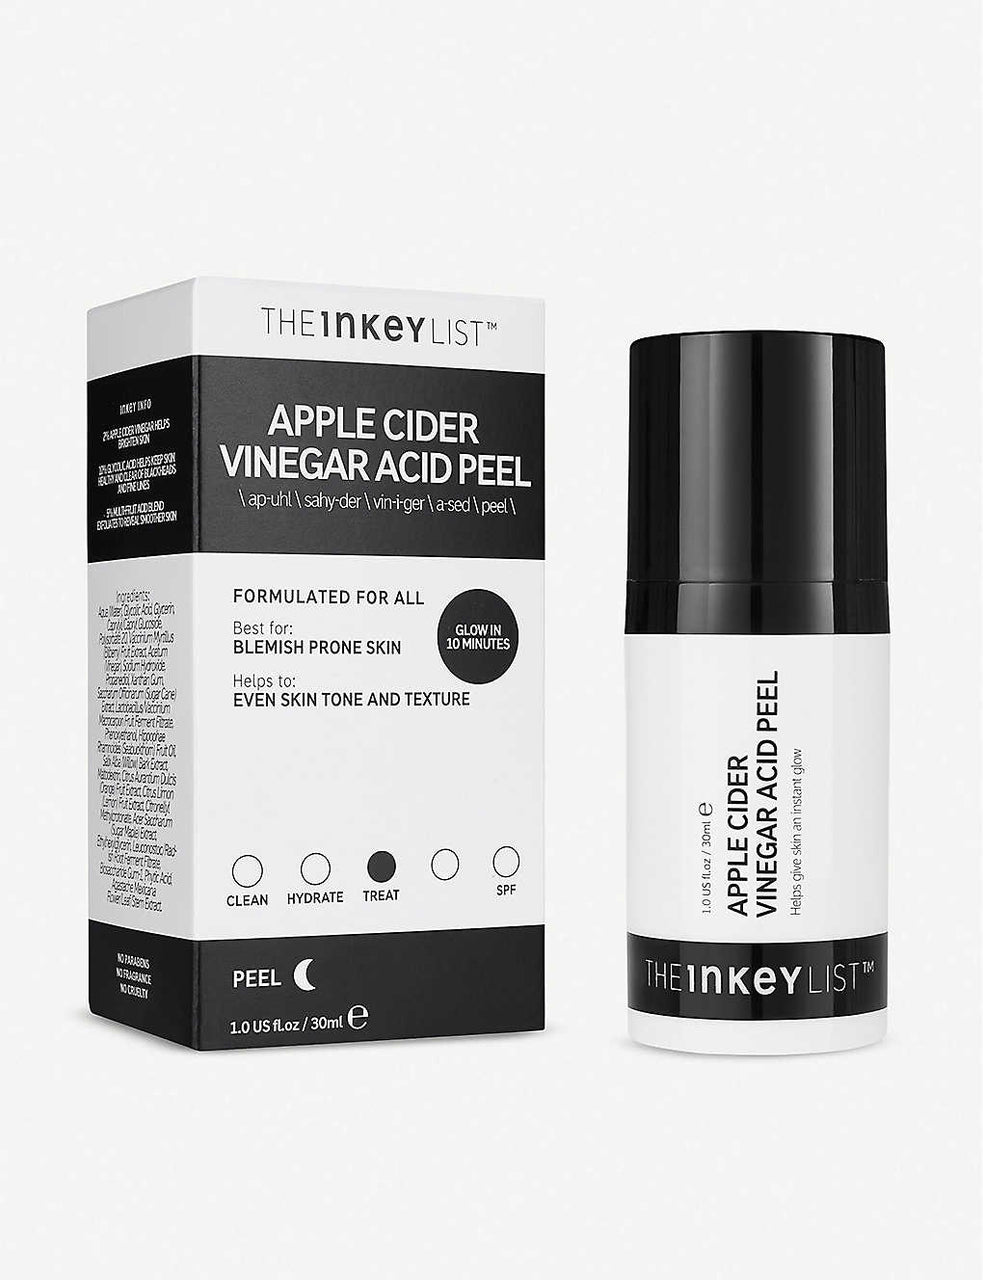 THE INKEY LIST - Apple Cider Vinegar Peel